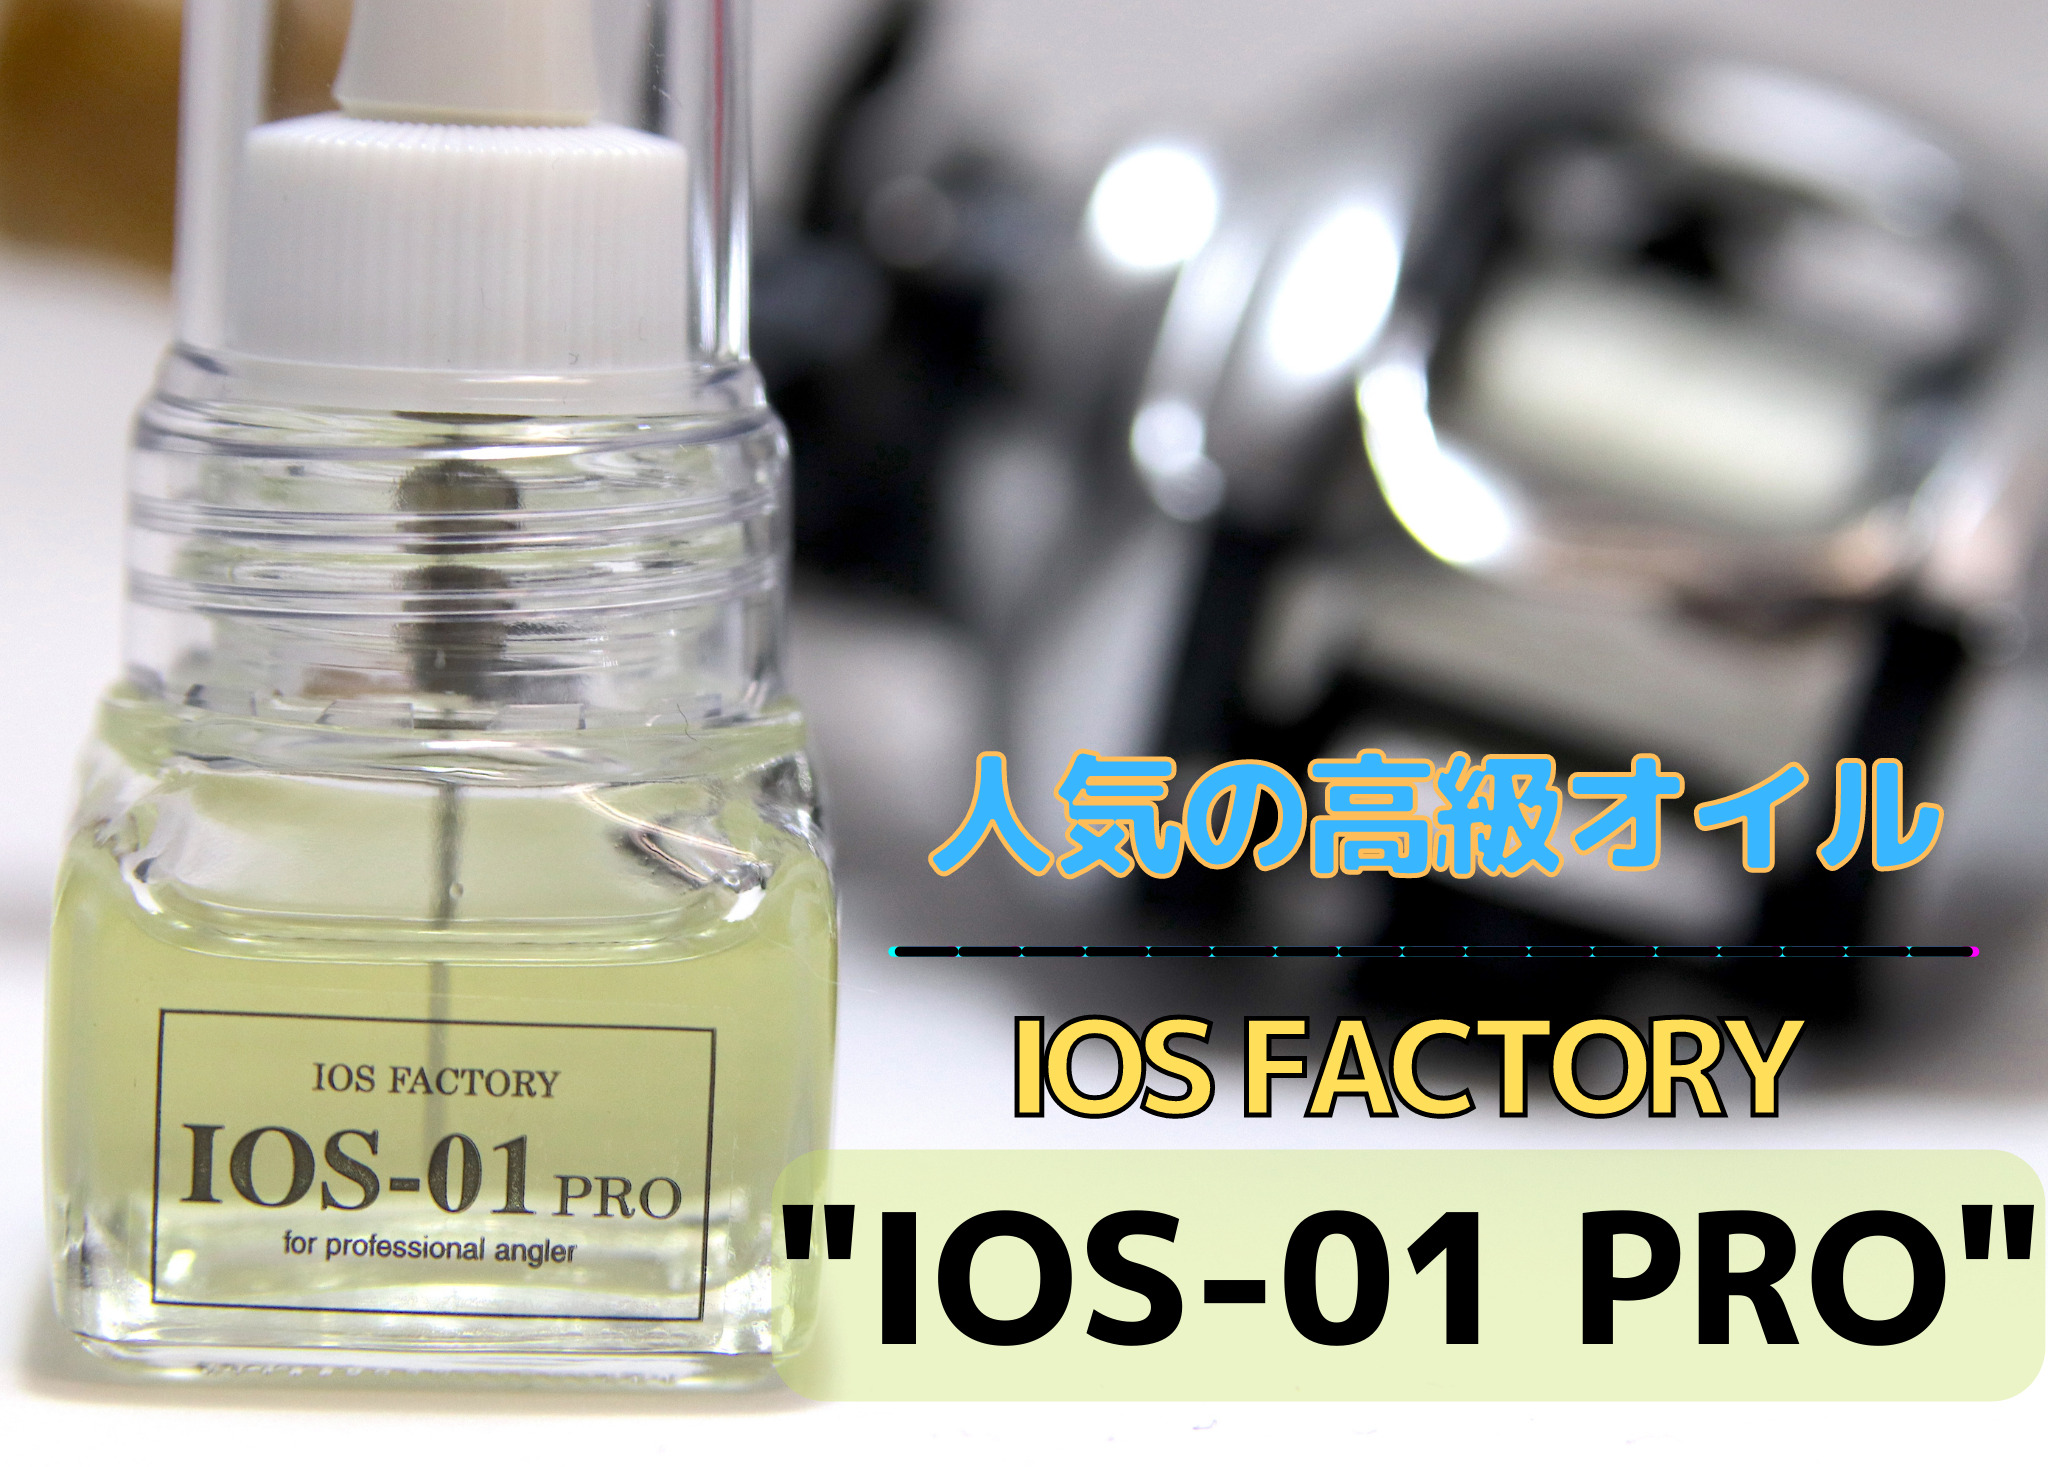 インプレ】IOSファクトリー「IOS-01 PRO」。人気の高級リールオイルを購入。評判にたぐわぬ超スムーズなオイルですわ…